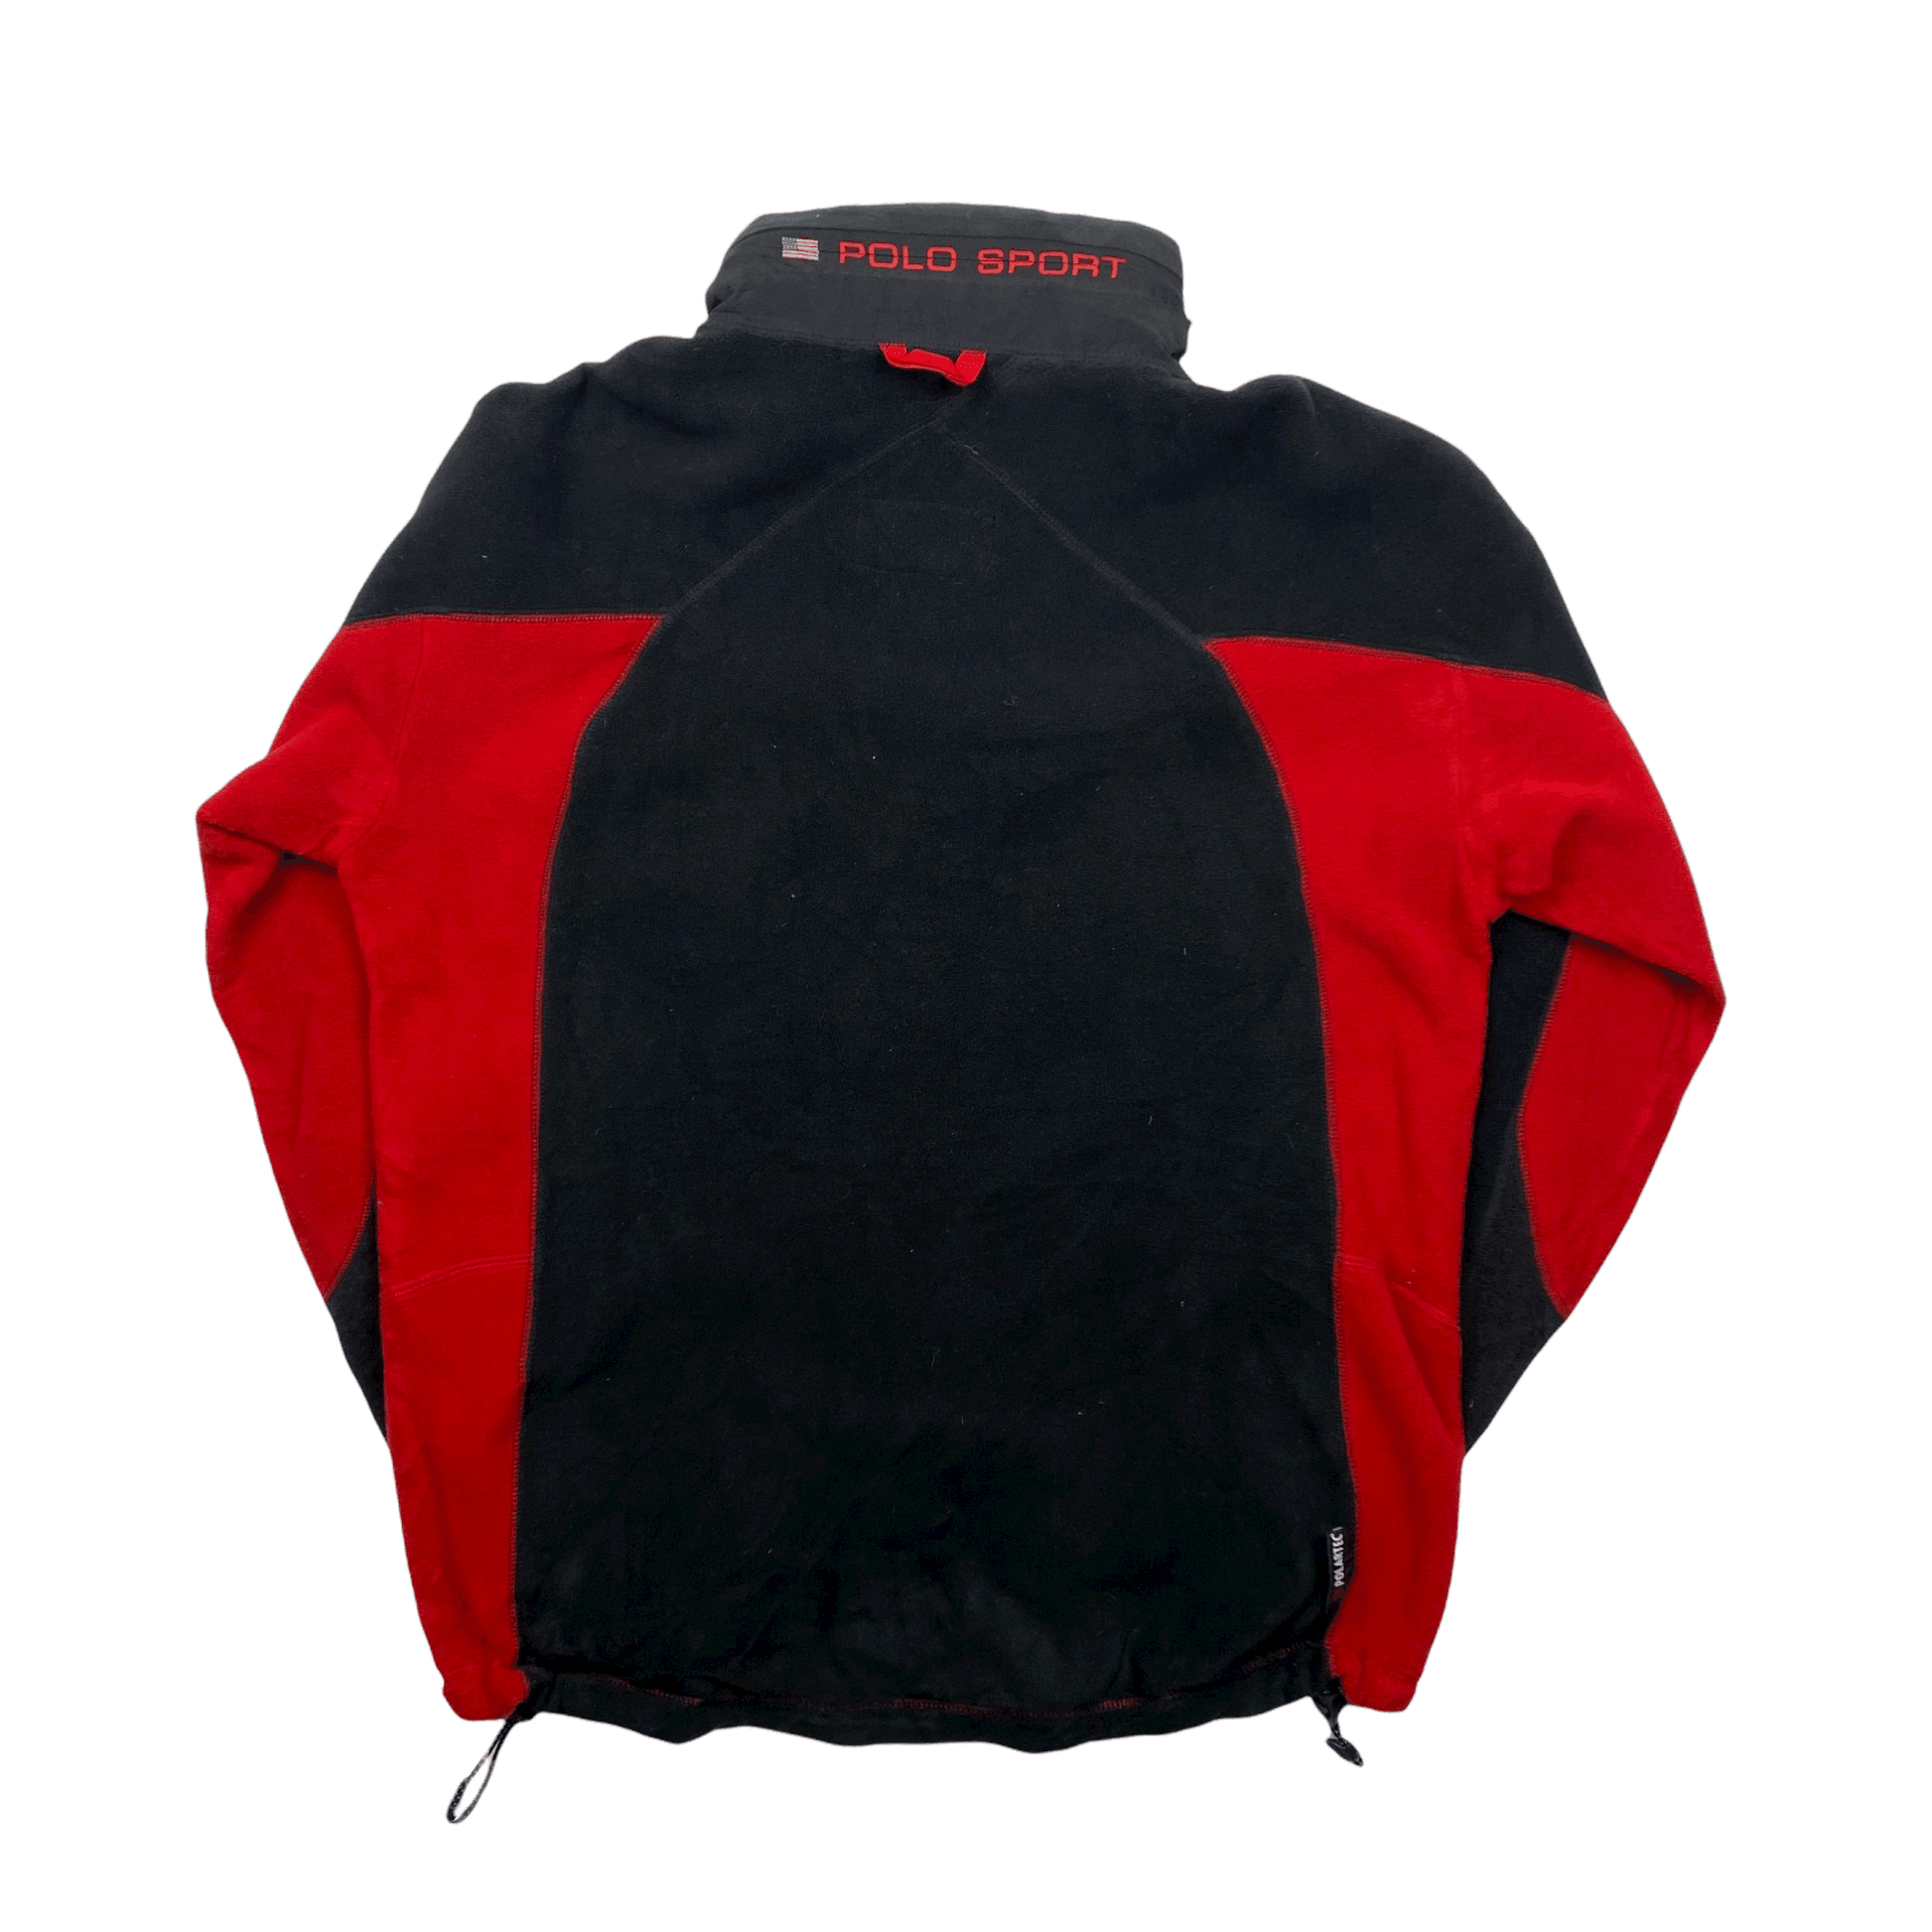 Vintage 90s Red + Black Ralph Lauren Polo Sport Full Zip Fleece Jacket - Medium - The Streetwear Studio